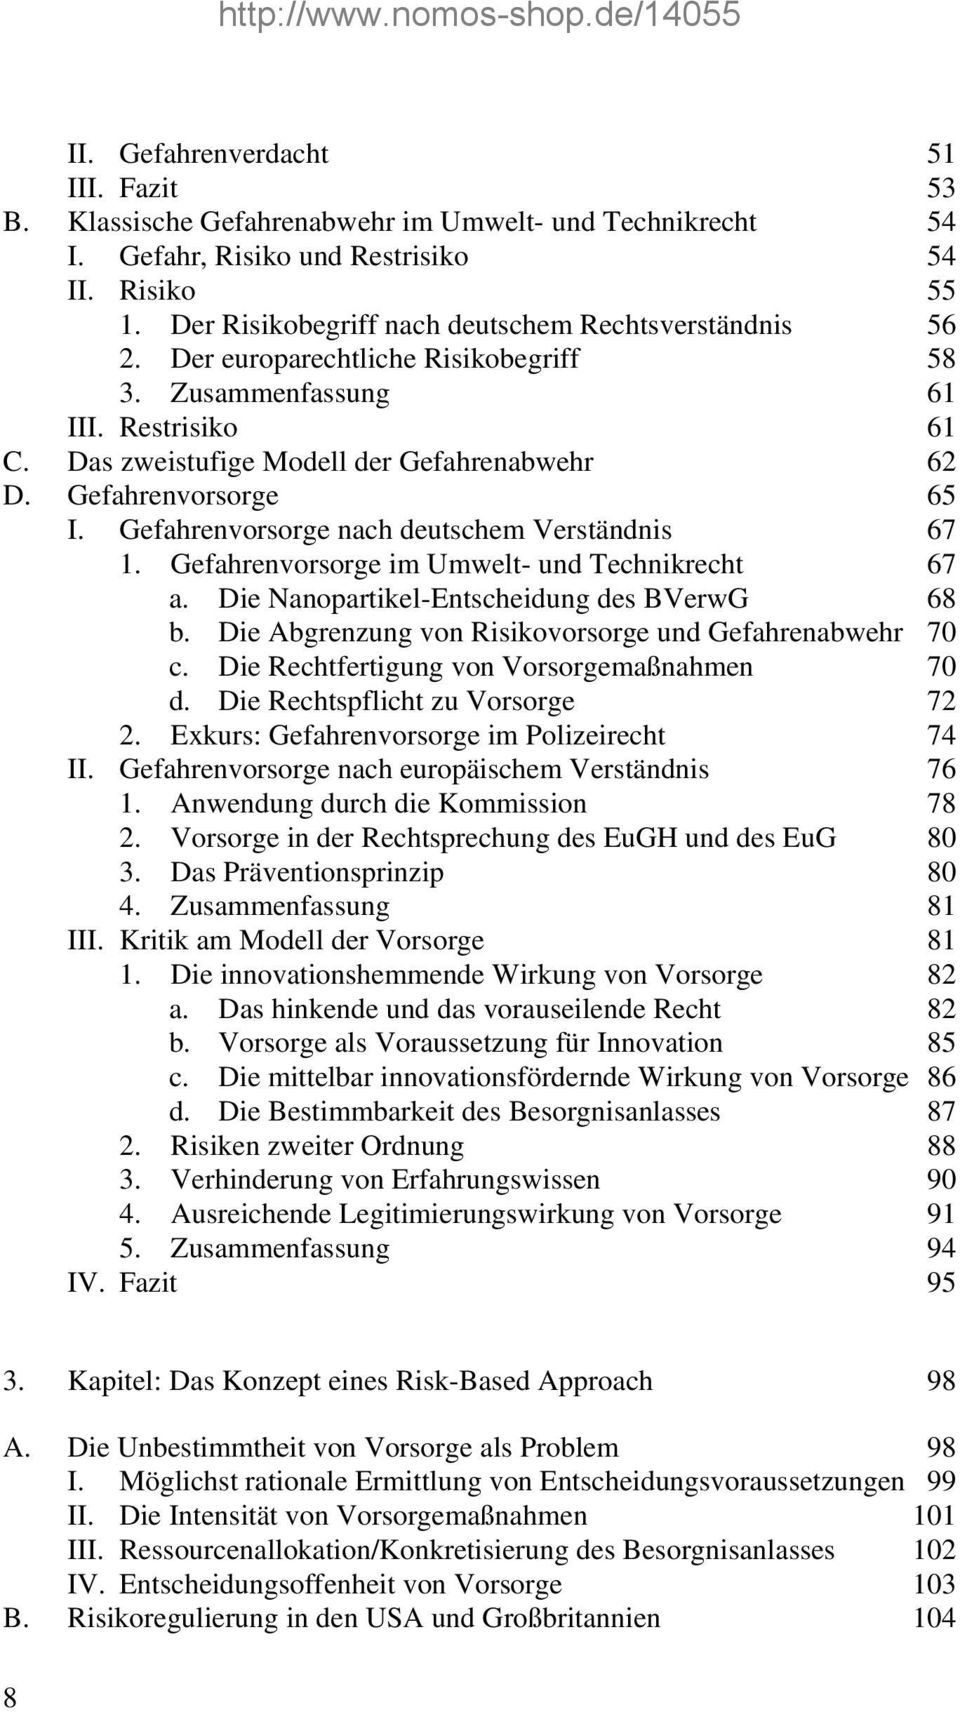 Gefahrenvorsorge 65 I. Gefahrenvorsorge nach deutschem Verständnis 67 1. Gefahrenvorsorge im Umwelt- und Technikrecht 67 a. Die Nanopartikel-Entscheidung des BVerwG 68 b.